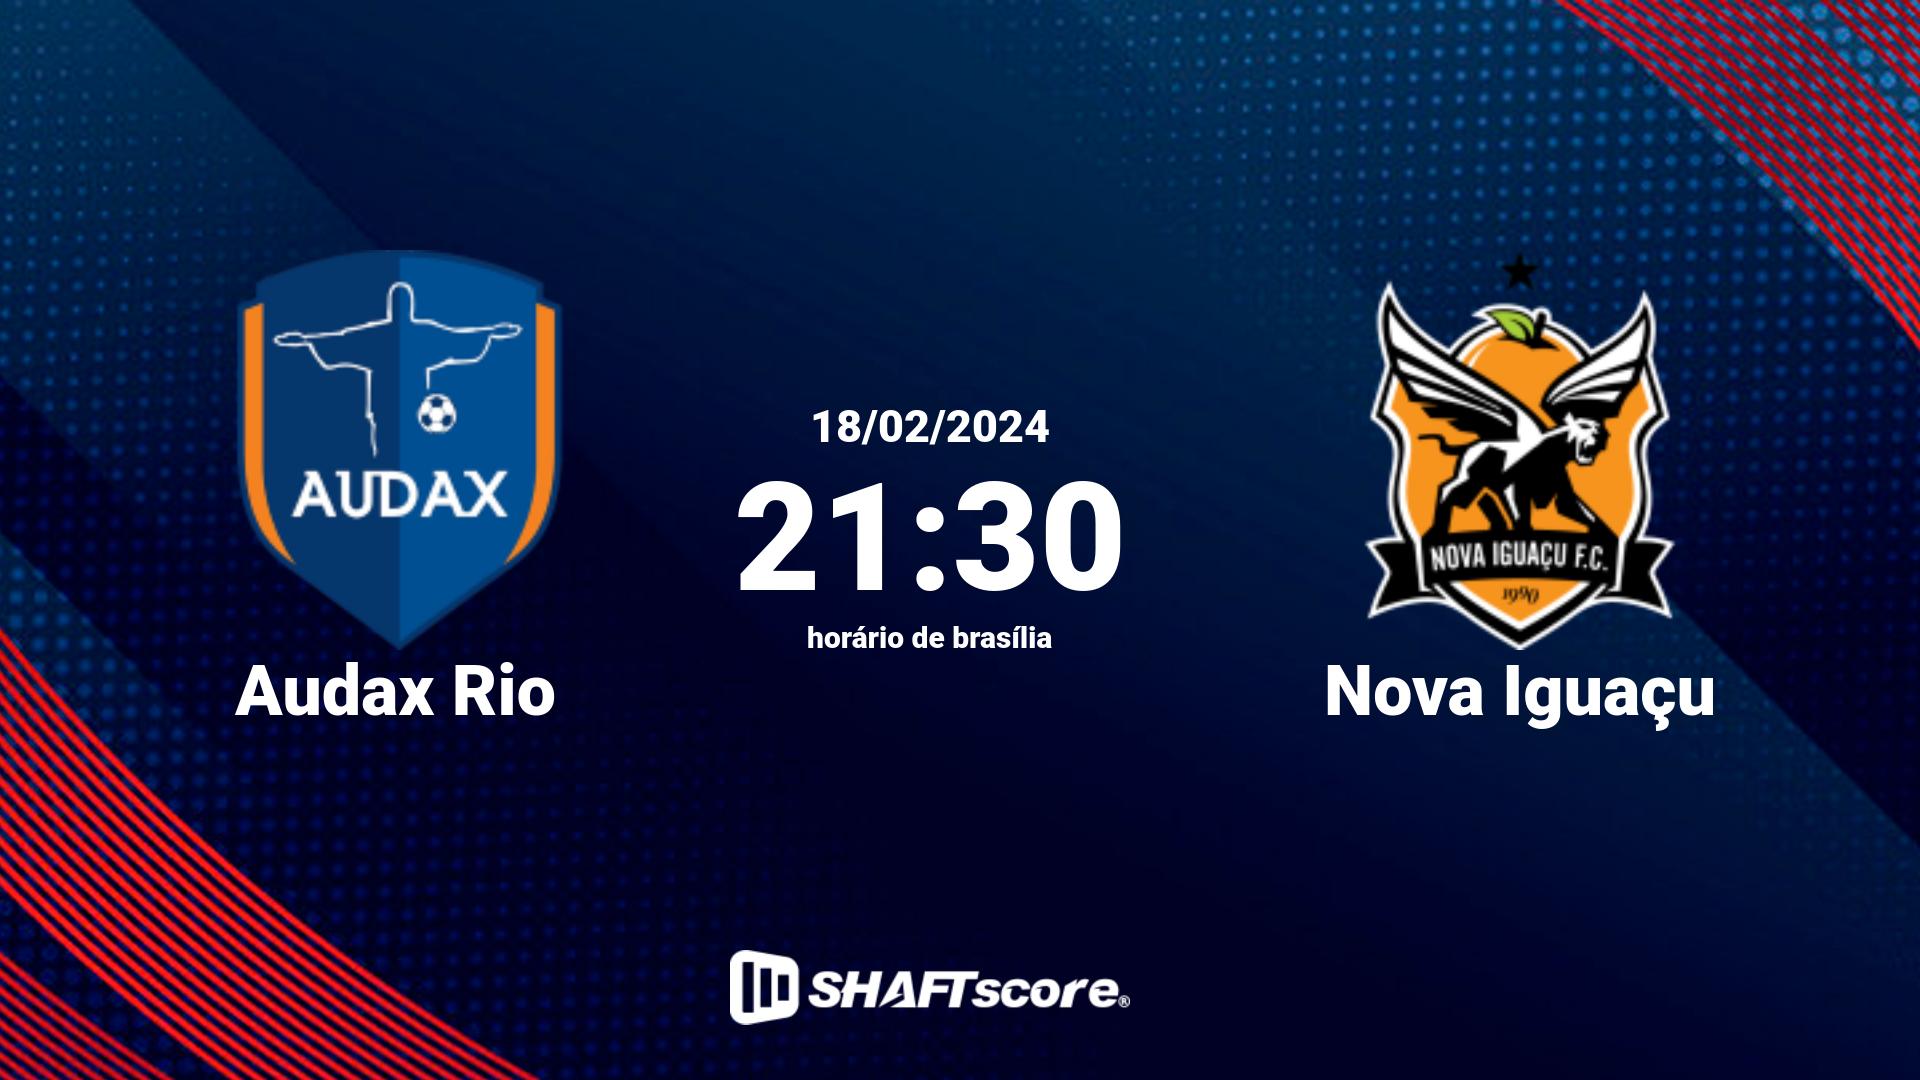 Estatísticas do jogo Audax Rio vs Nova Iguaçu 18.02 21:30